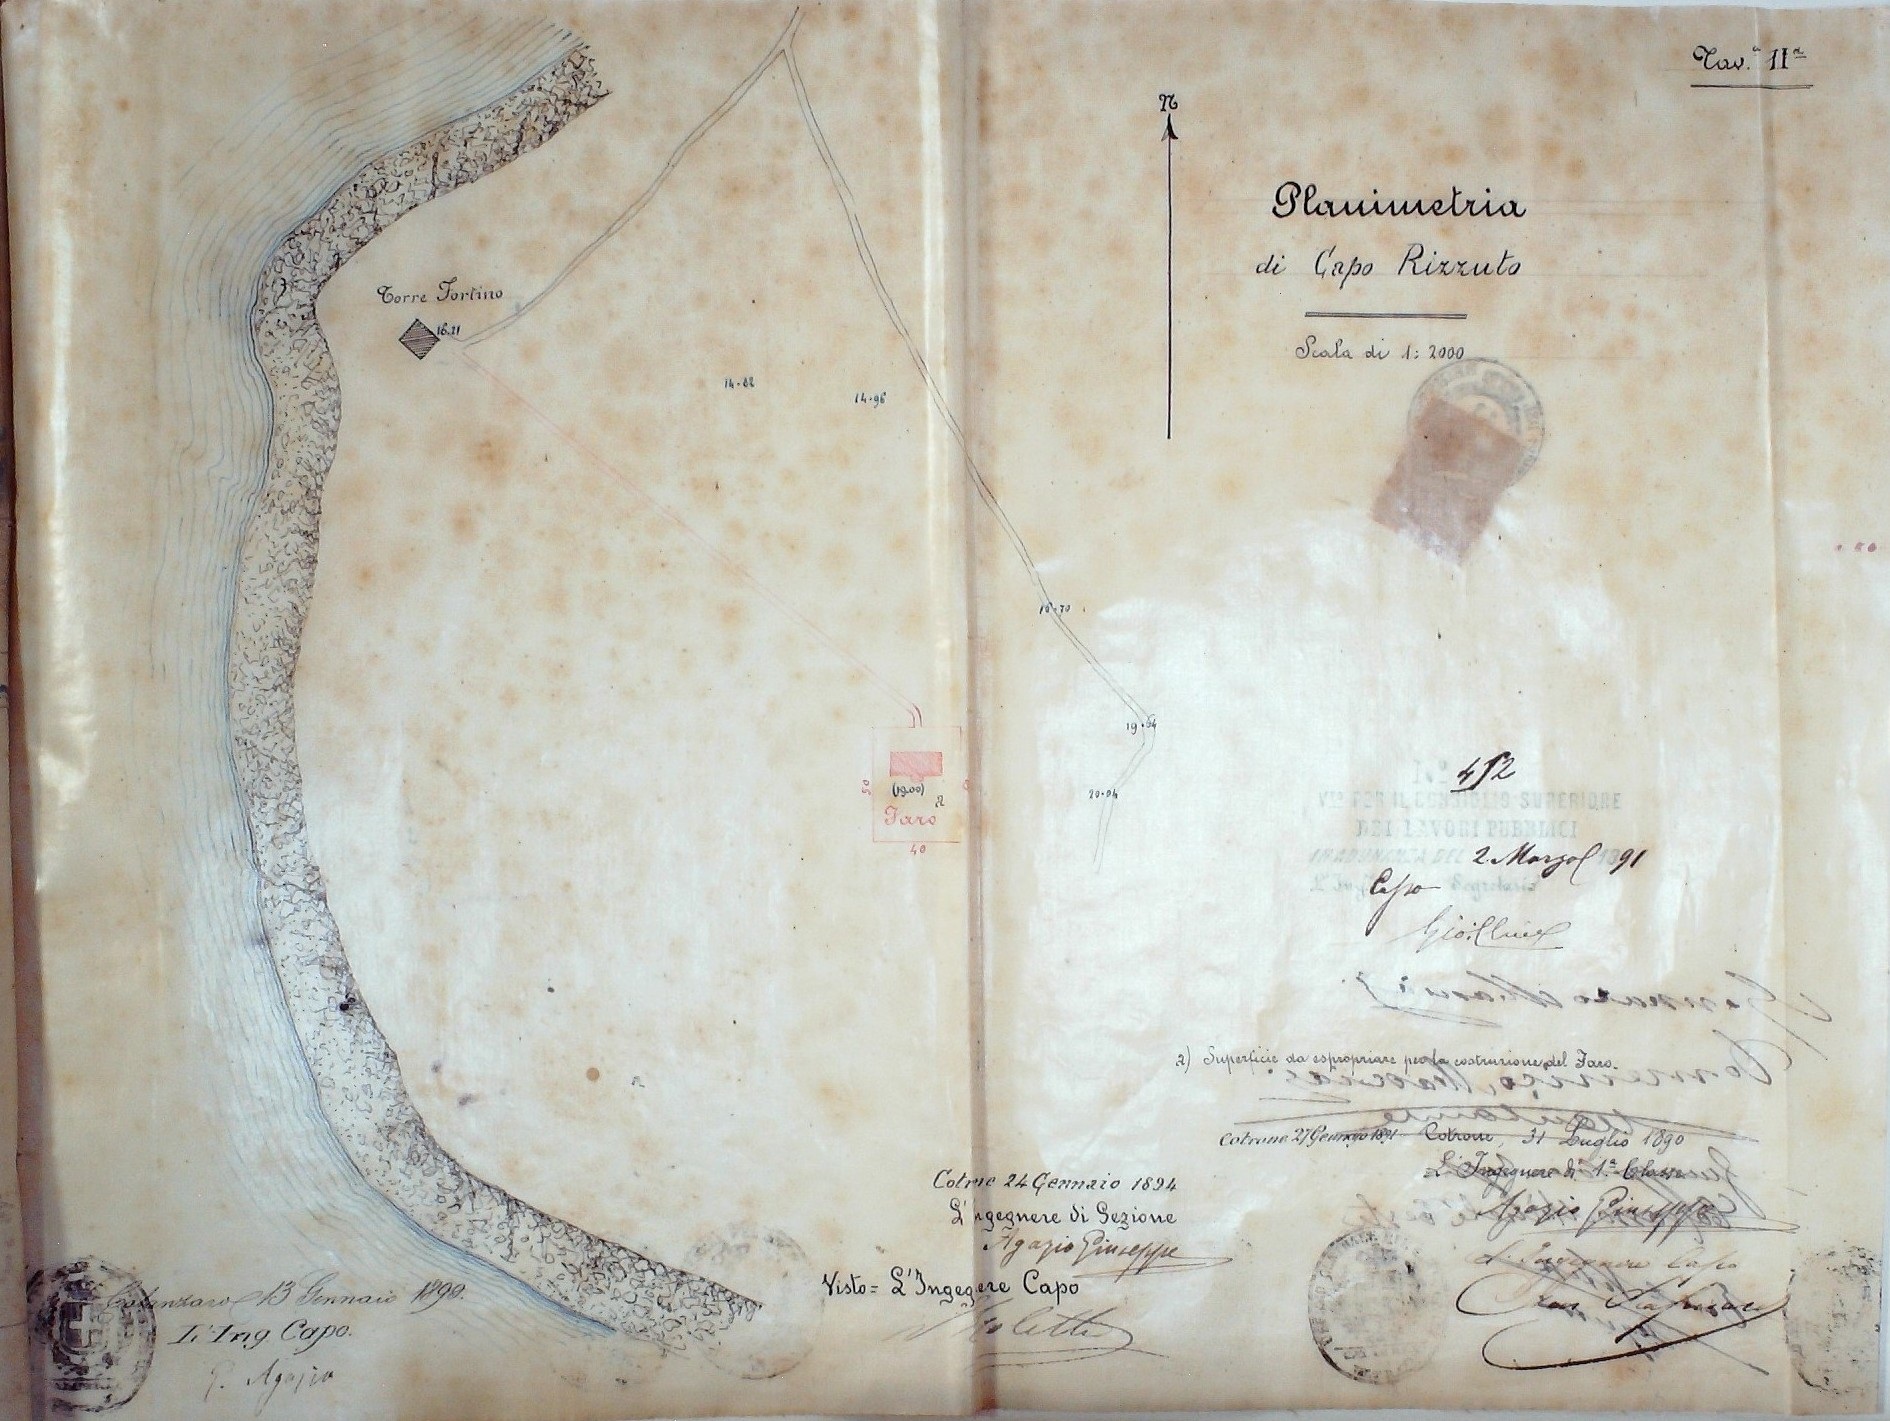 Planimetria di Capo Rizzuto - Tav. II